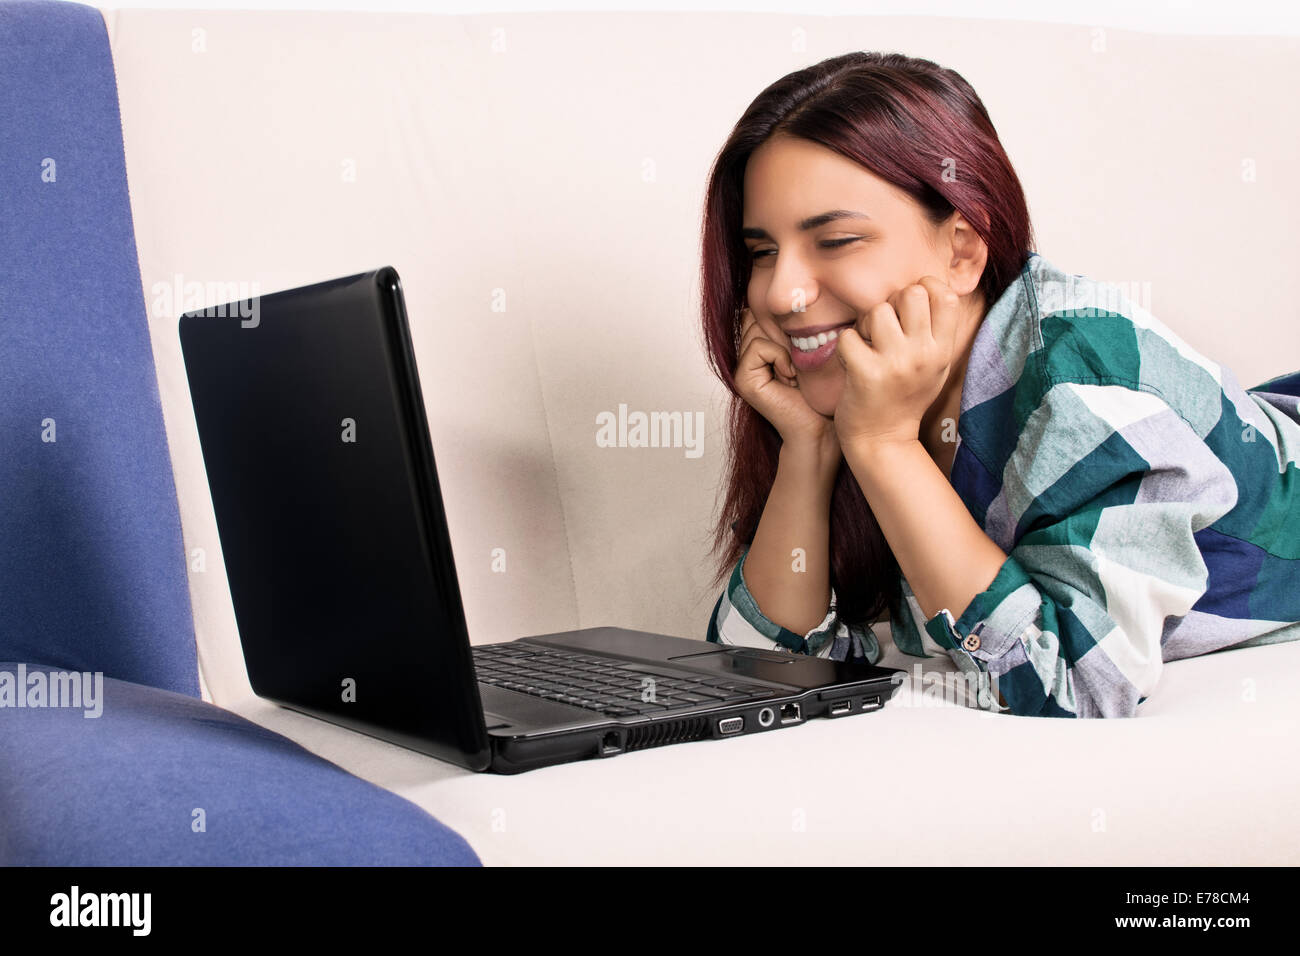 Immagine ravvicinata di un bel sorriso ragazza a casa giacente sul suo lettino, guardando una schermata di un laptop. Sono contento quando parlo ai miei amici preferiti. Foto Stock